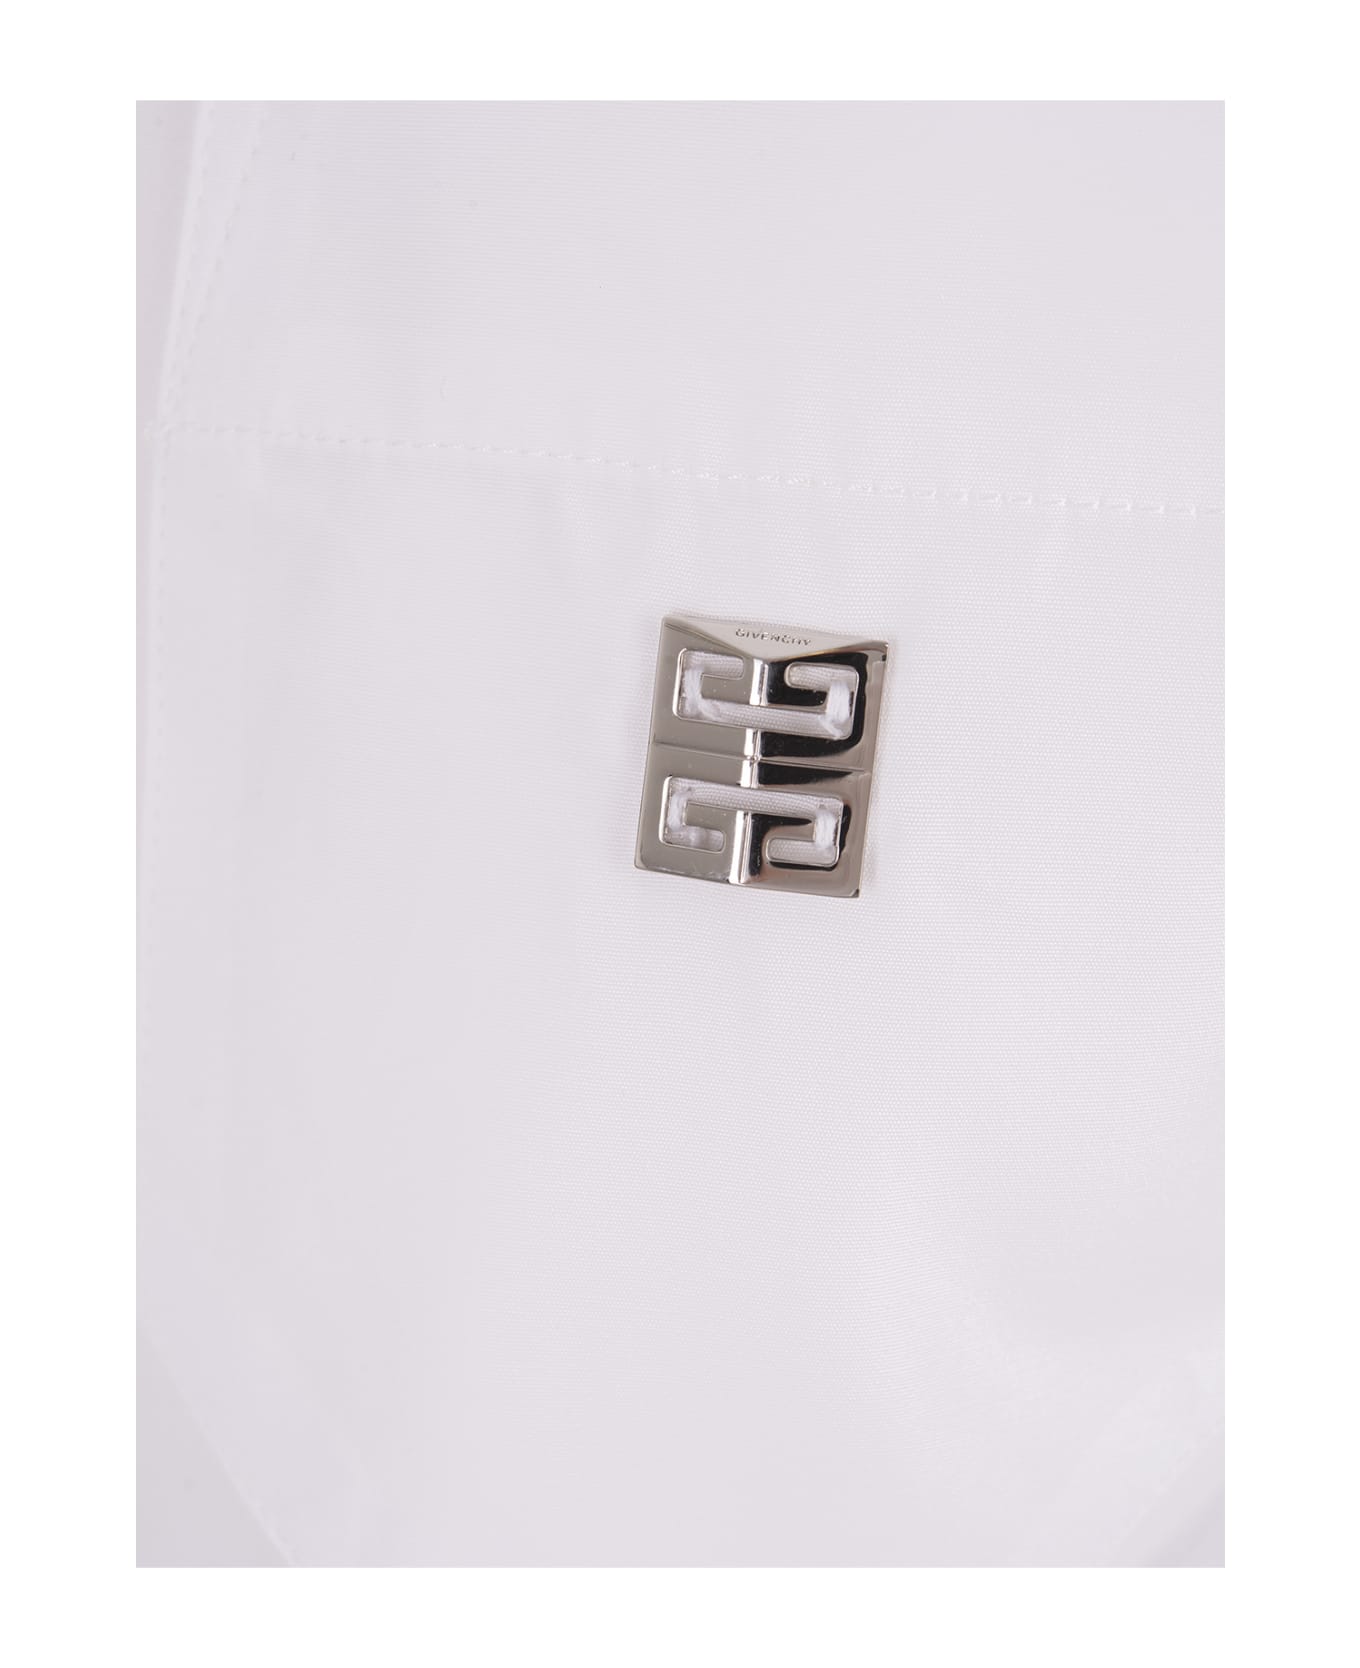 Givenchy Stone Grey Poplin Short Shirt - White